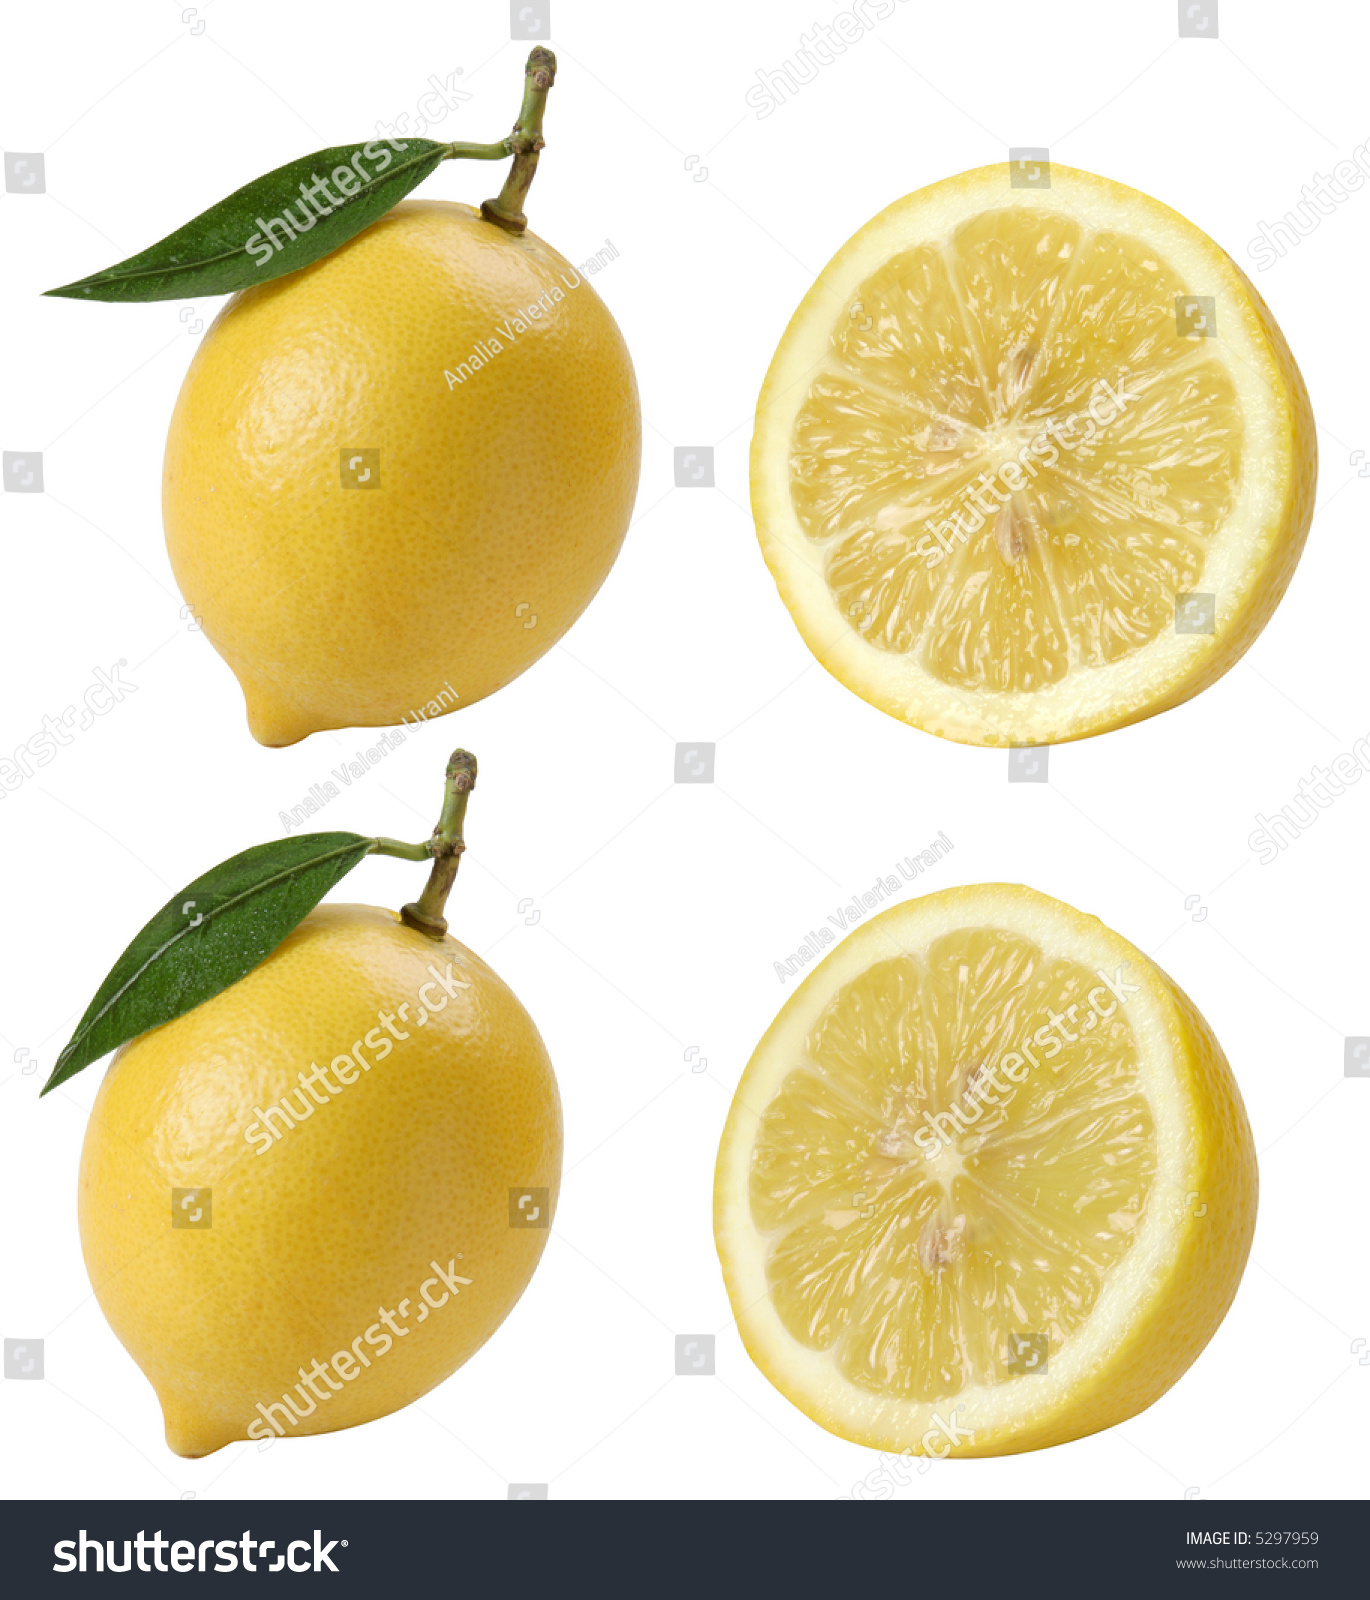 Fresh Lemons Combo Image Isolated On Stock Photo (Royalty Free ...